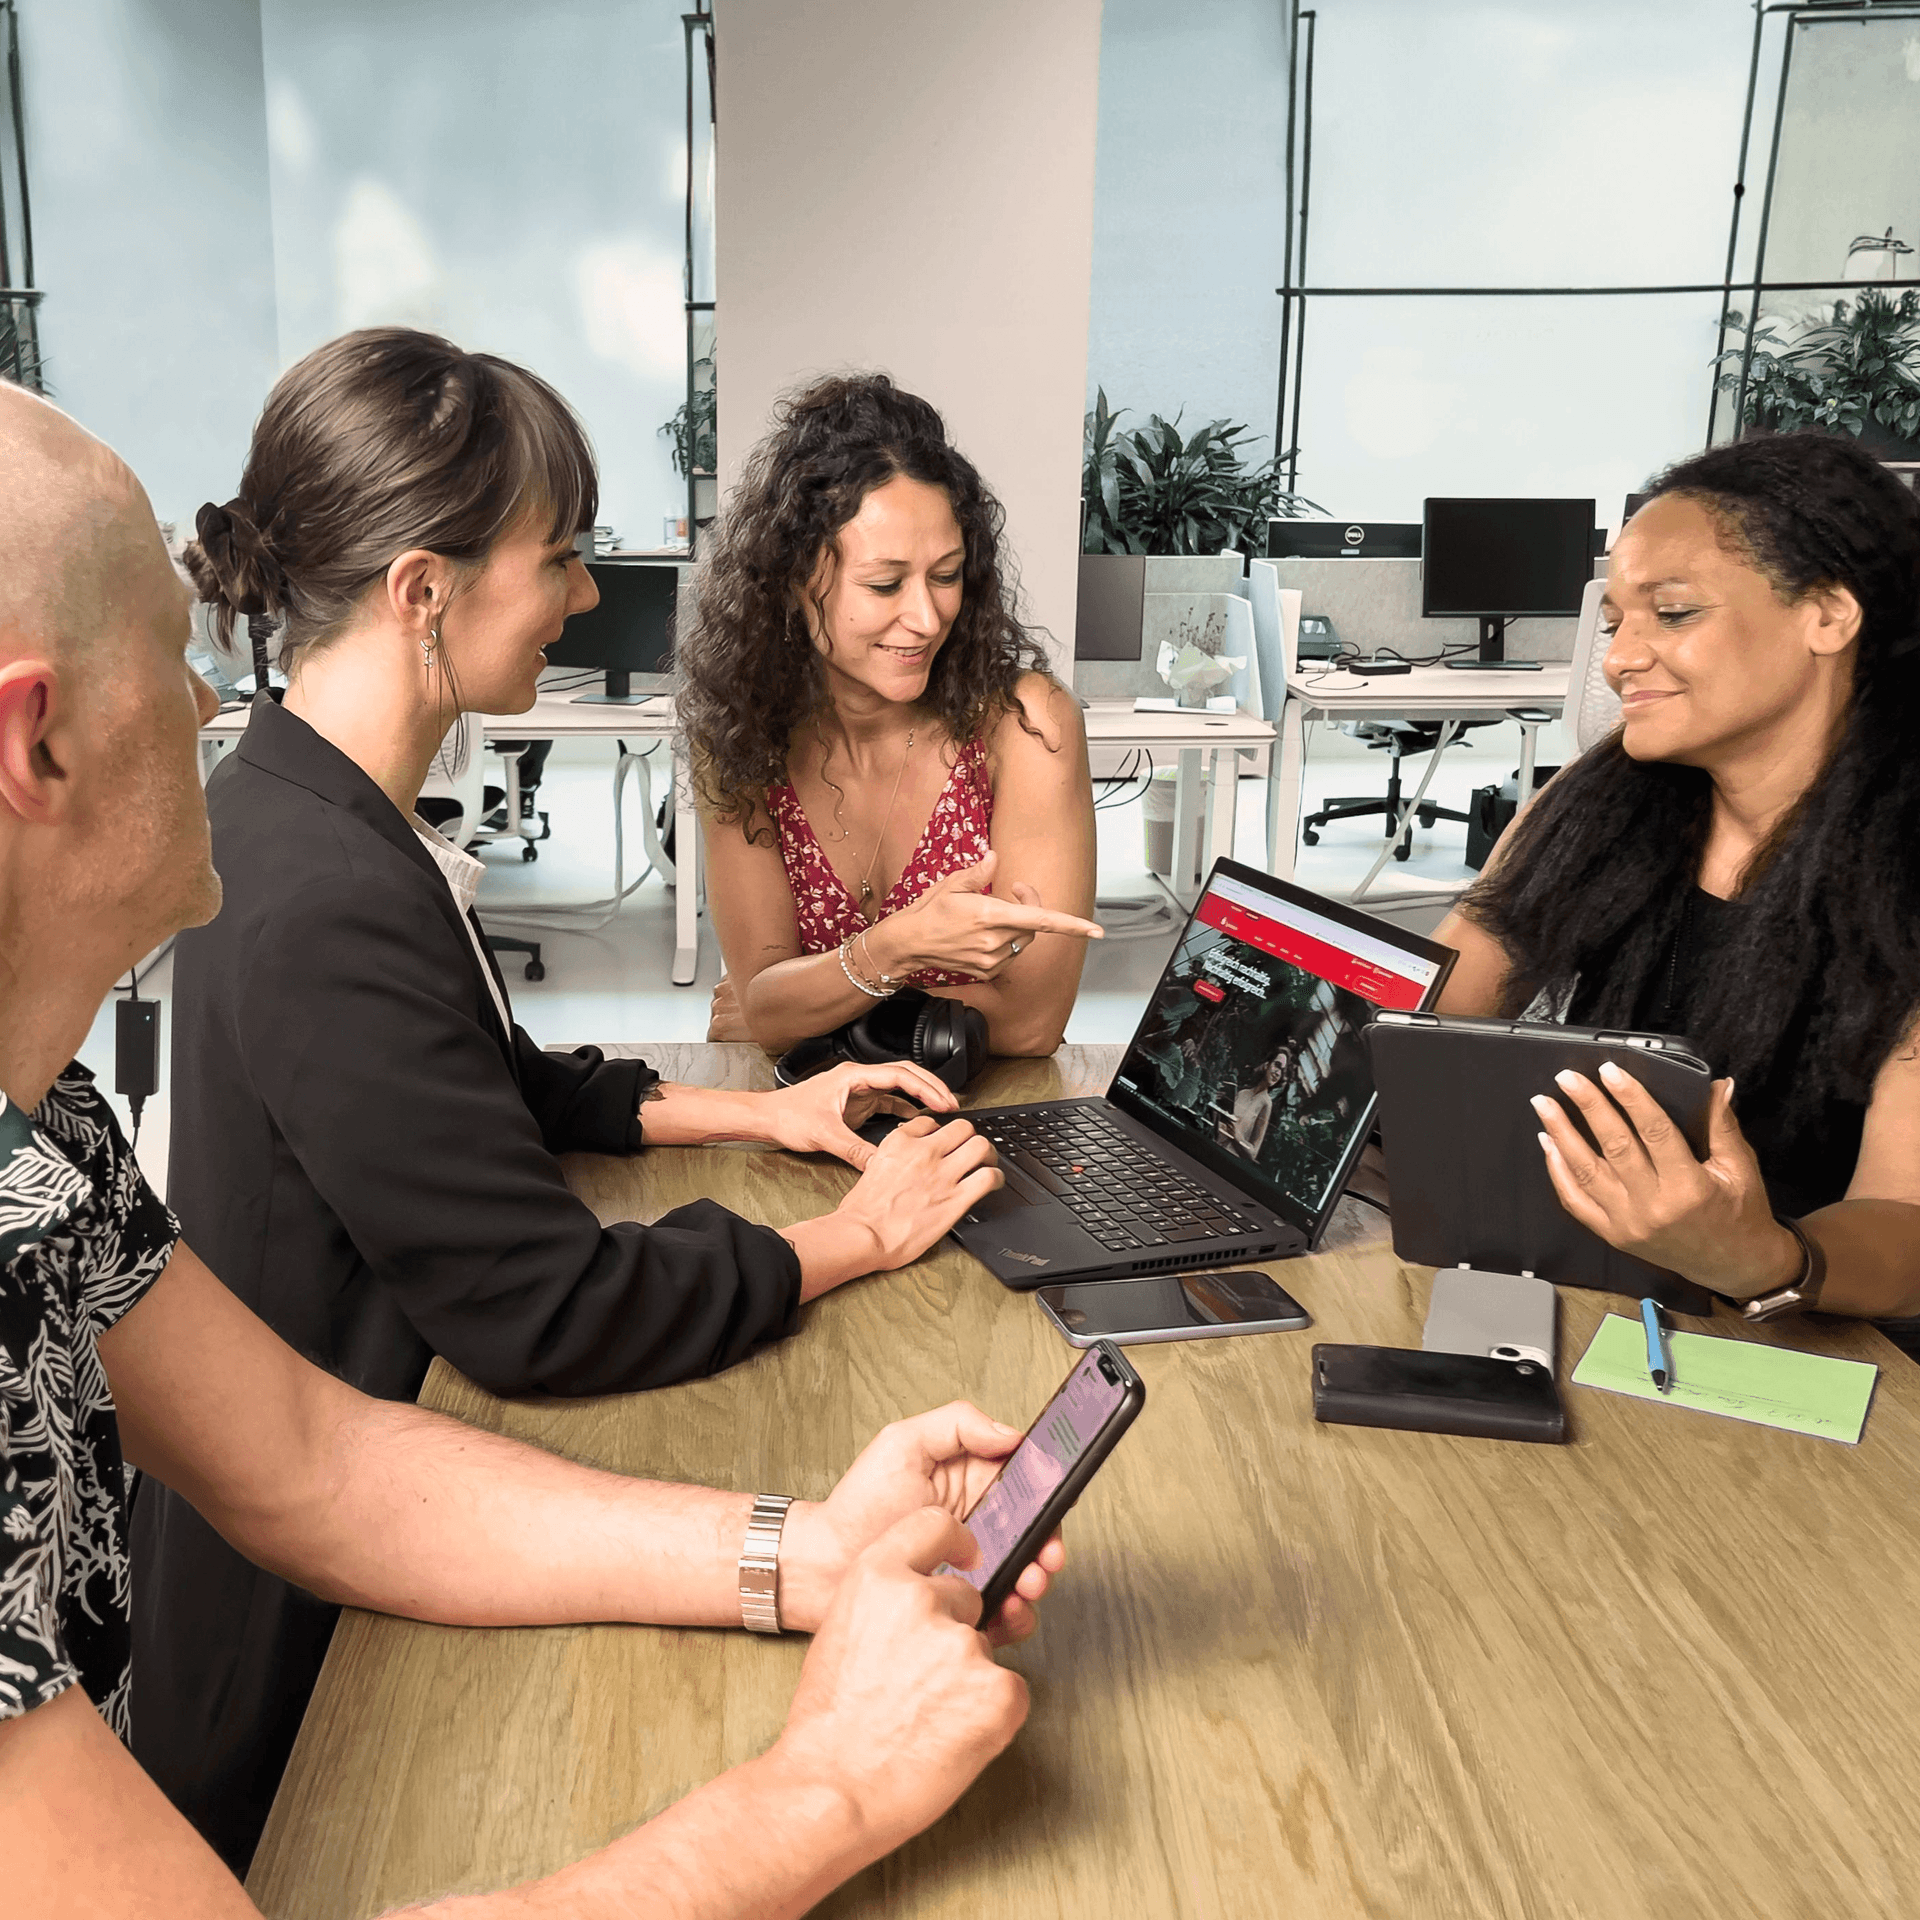 Drei Frauen und ein Mann sitzen an einem Konferenztisch im Büro an einem Laptop und haben eine Besprechung.